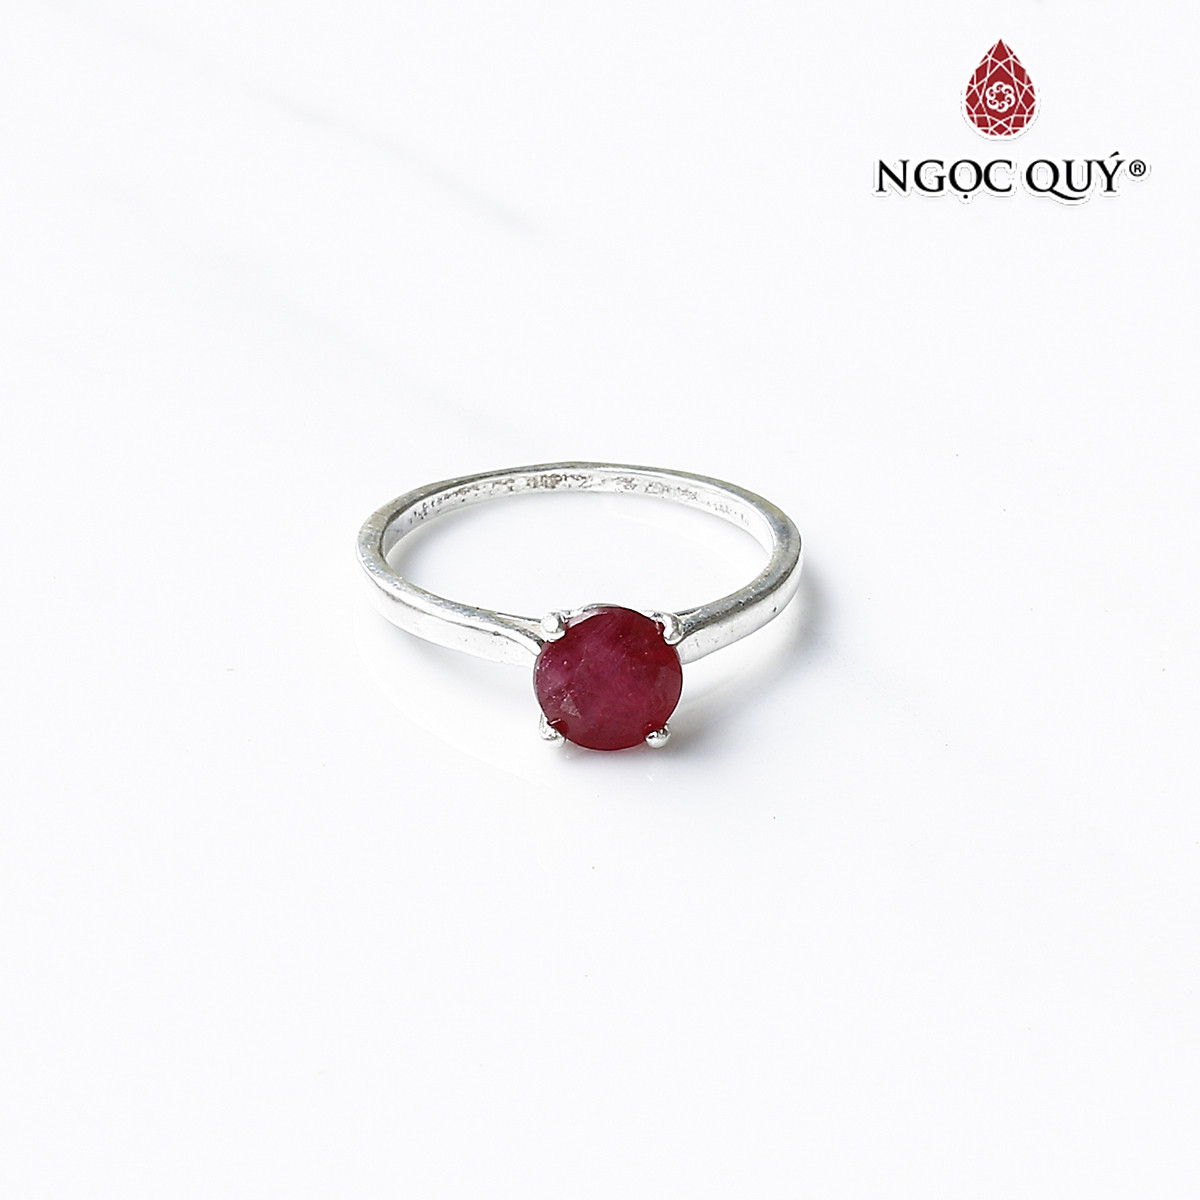 Nhẫn đá ruby - Nhẫn đá ruby luôn là một món trang sức được ưa chuộng với sắc đỏ tươi sáng và lấp lánh rực rỡ. Sự kết hợp hoàn hảo giữa thiết kế đẹp mắt và chất liệu quý đã tạo nên những sản phẩm tuyệt đẹp không thể bỏ qua.